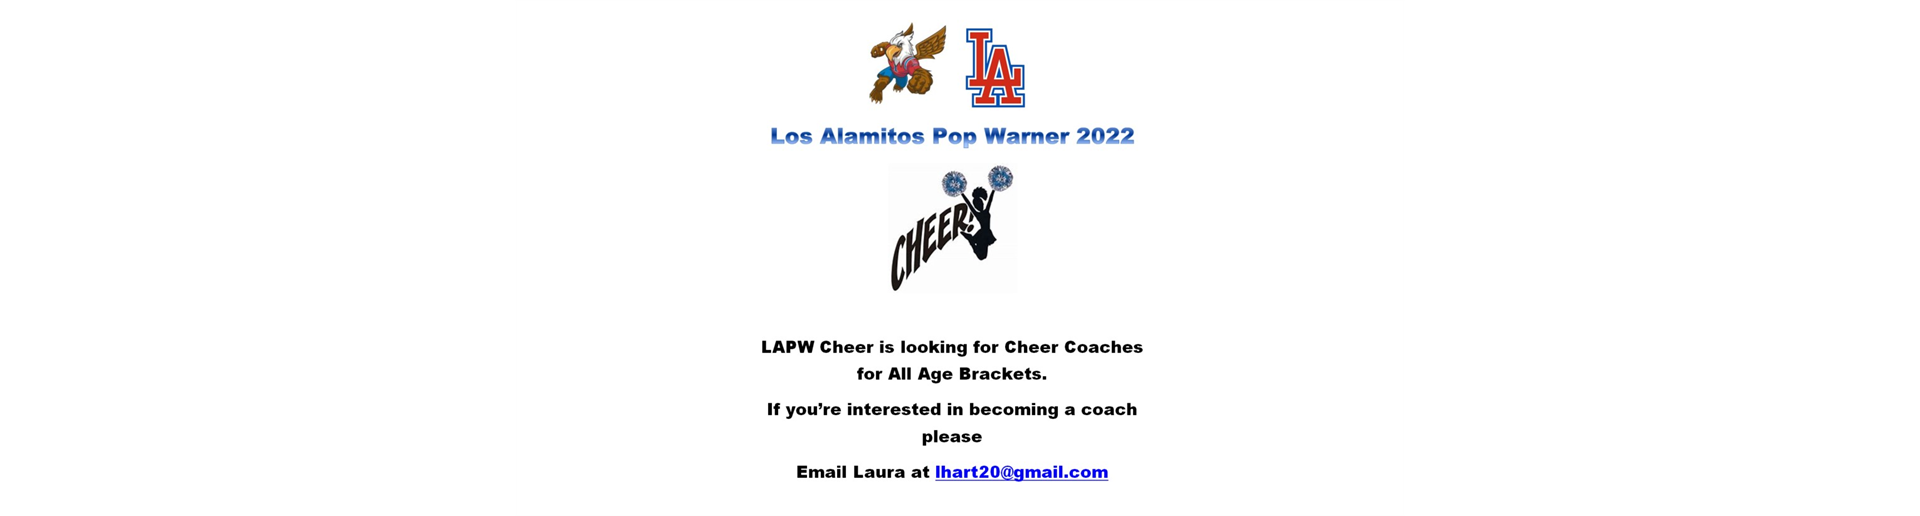 LAPW Cheer Needs Coaches 